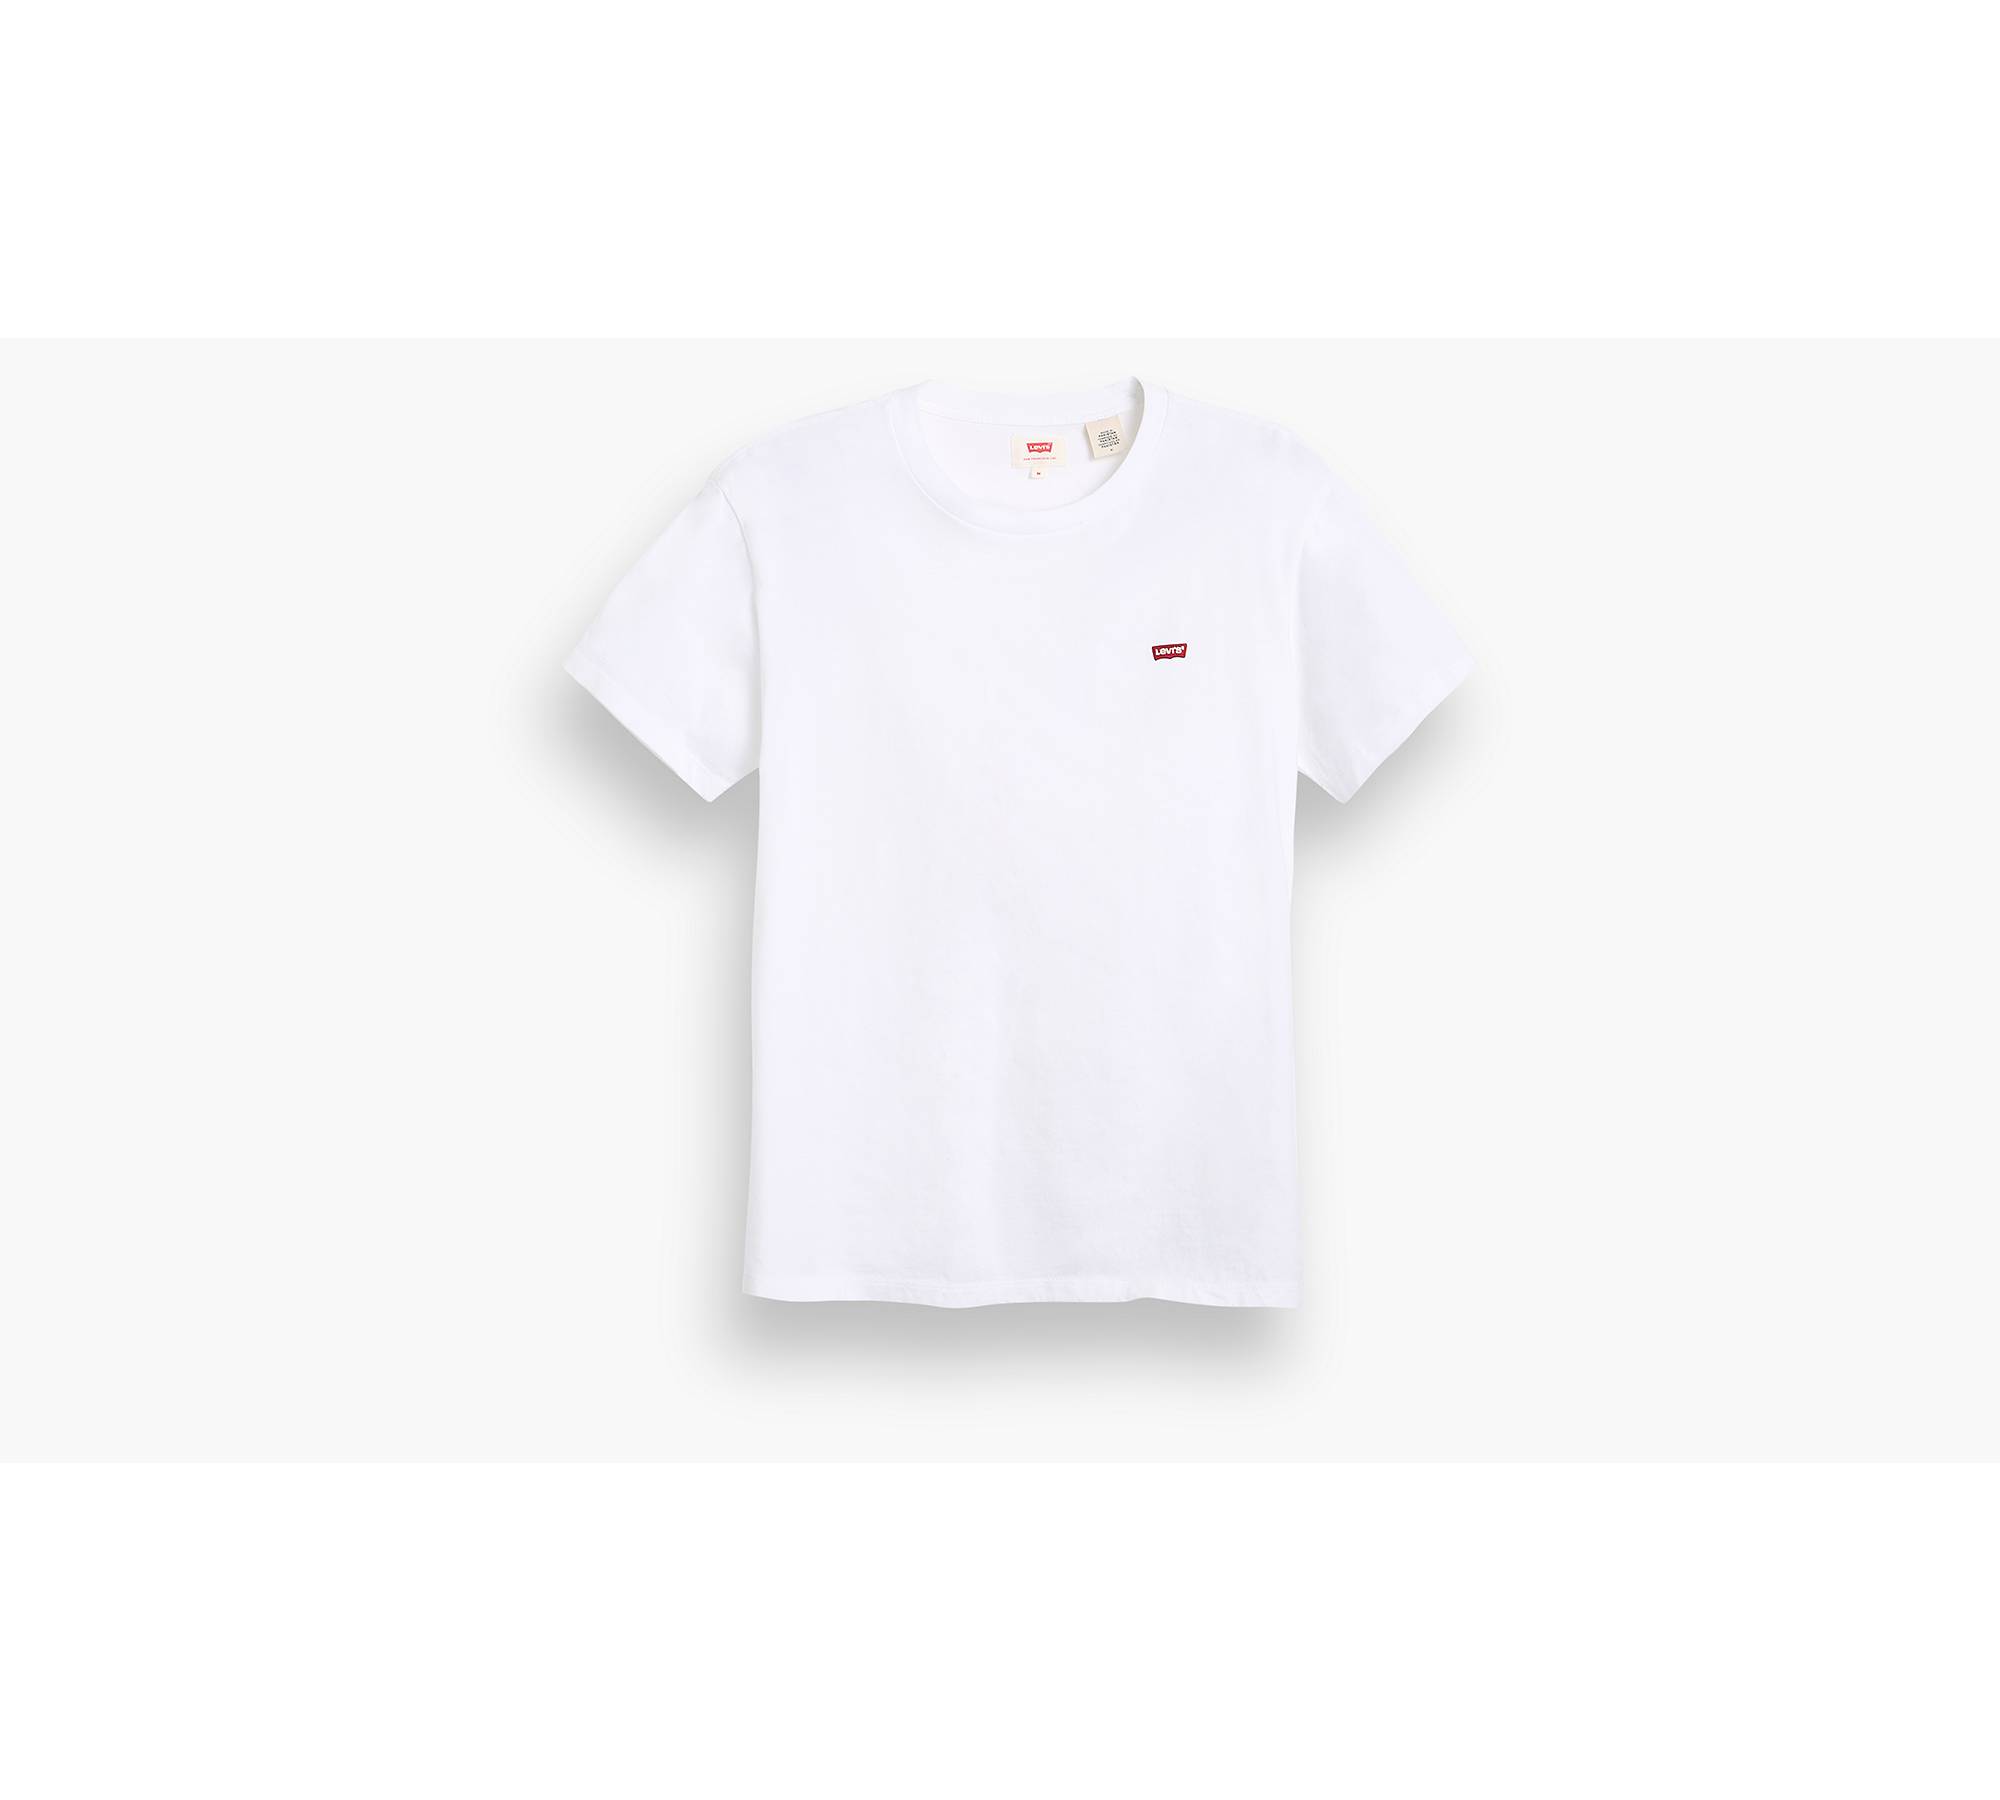 Tee-shirt col rond Levi's® Housemark en coton bleu marine floqué du logo en  rouge